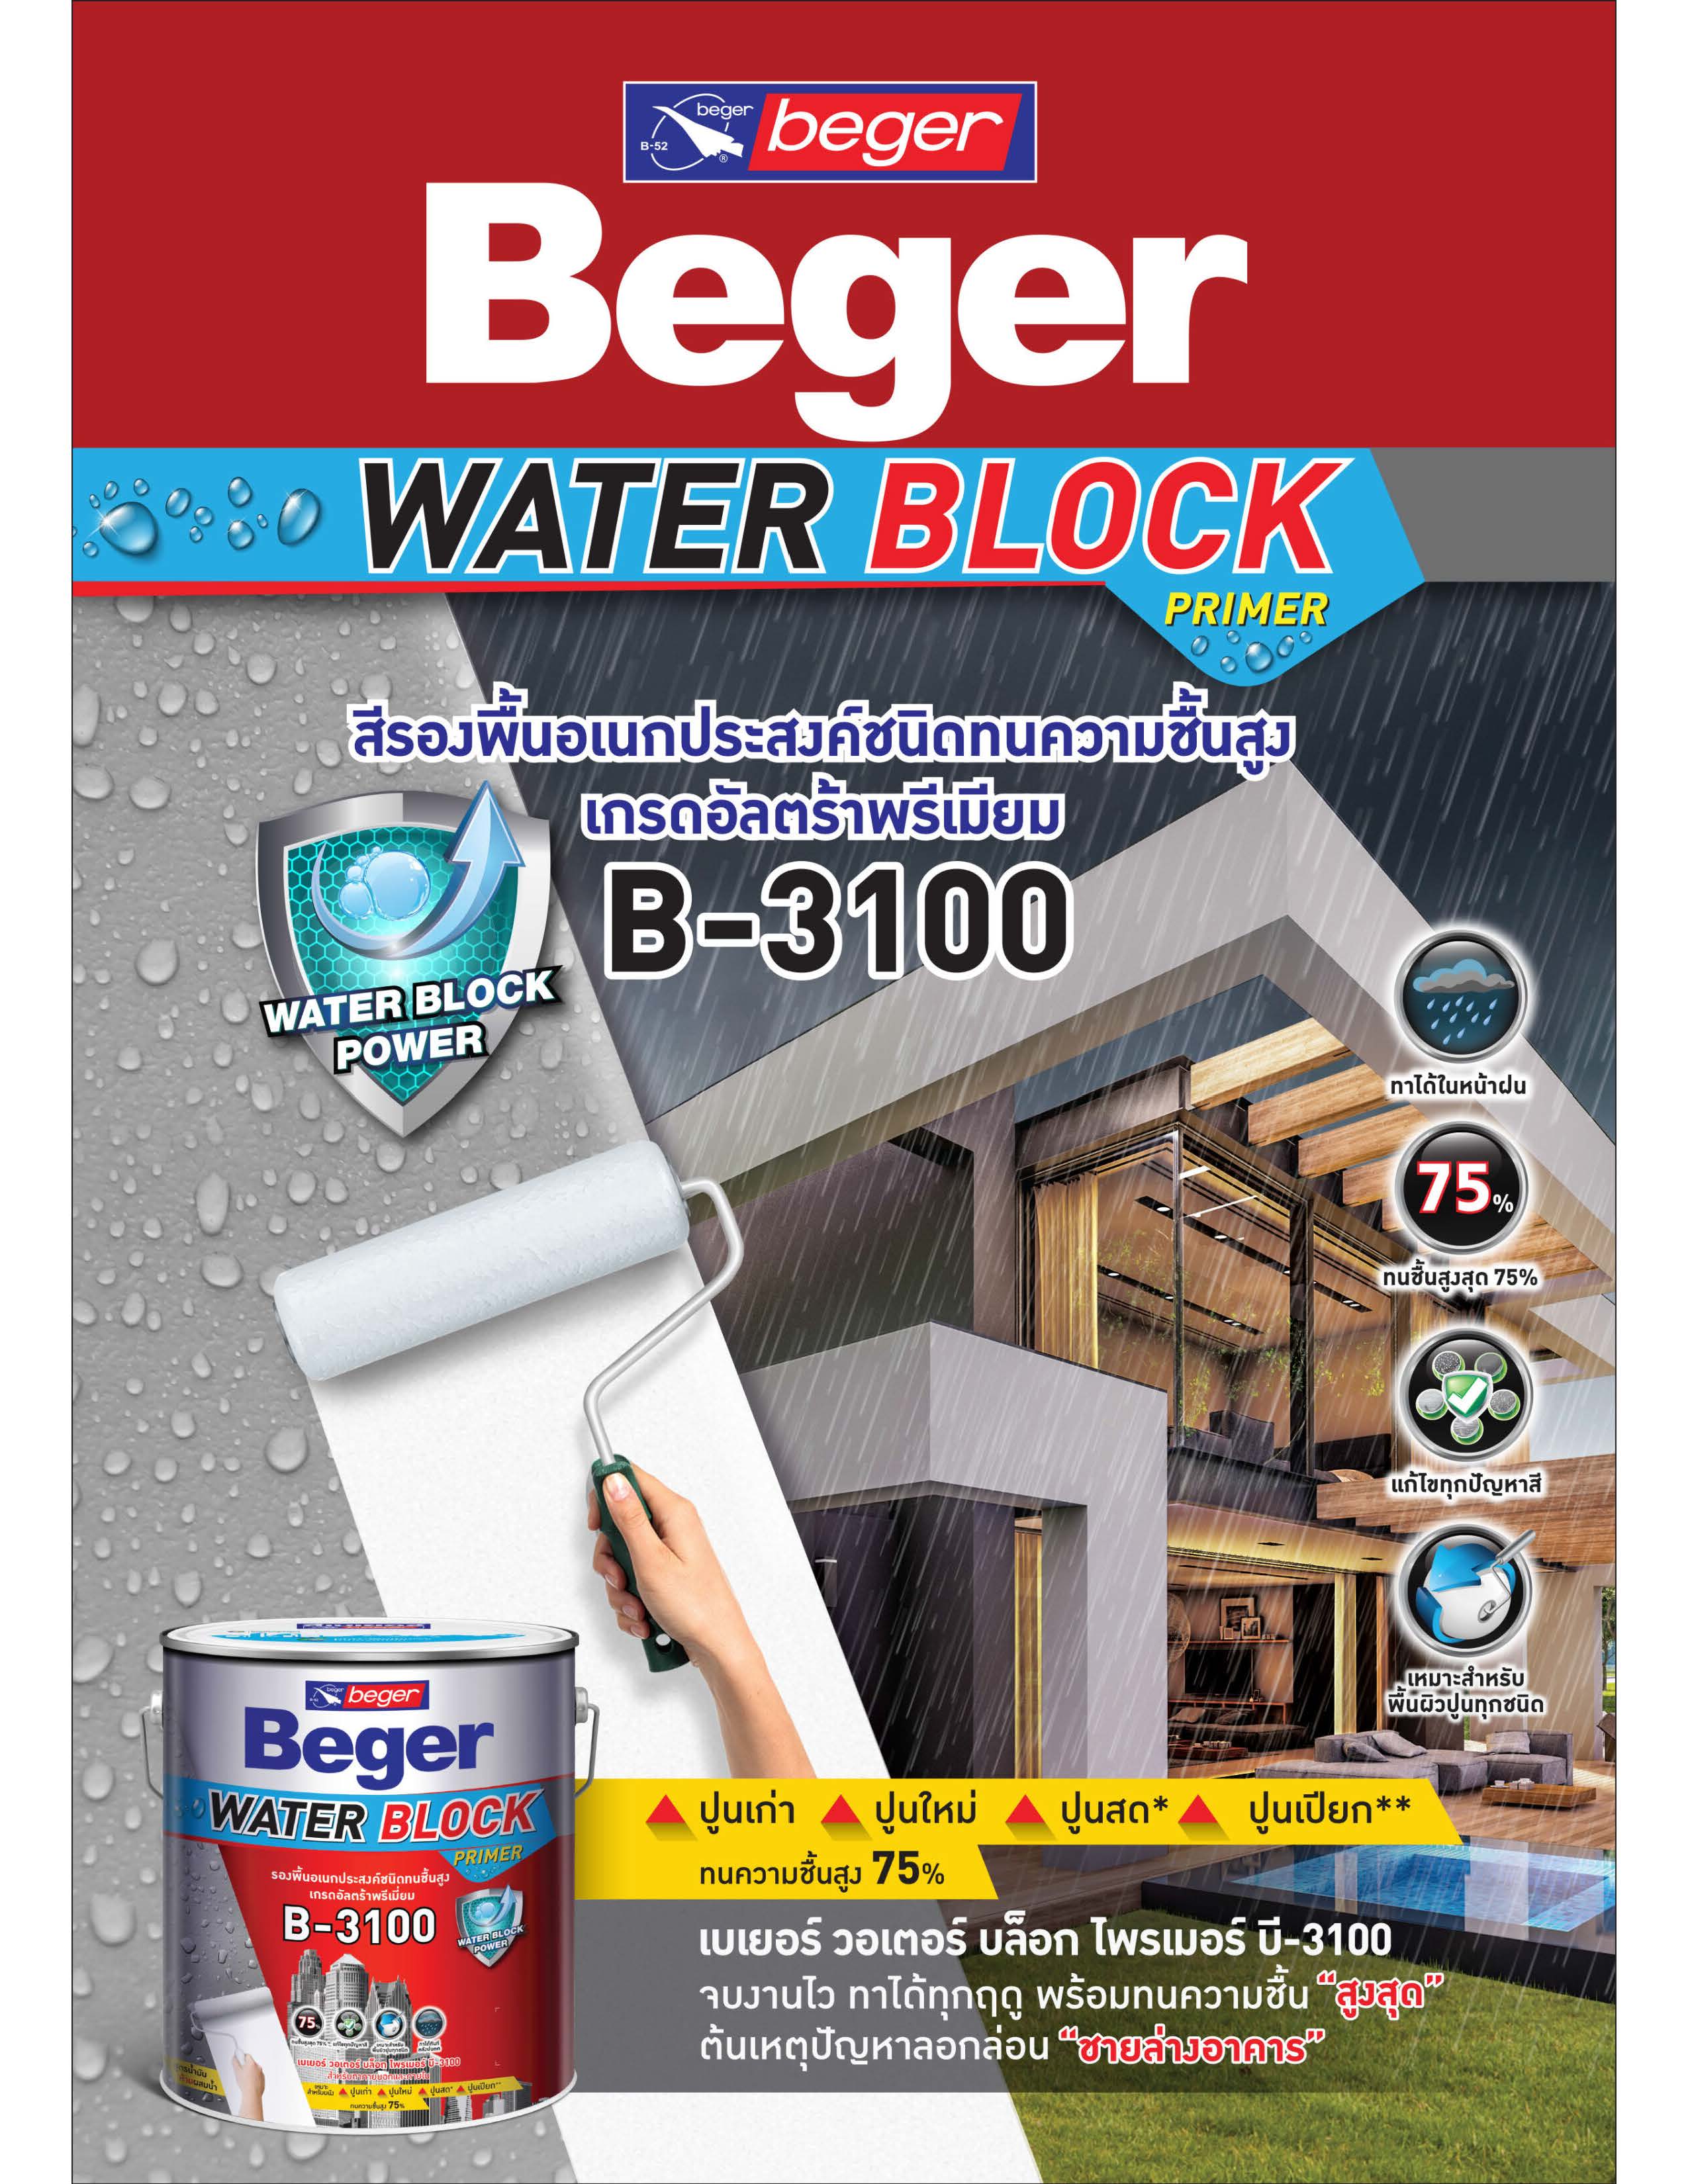 เบเยอร์ วอเตอร์ บล็อก บี-3100 / Beger Water Block Primer B-3100